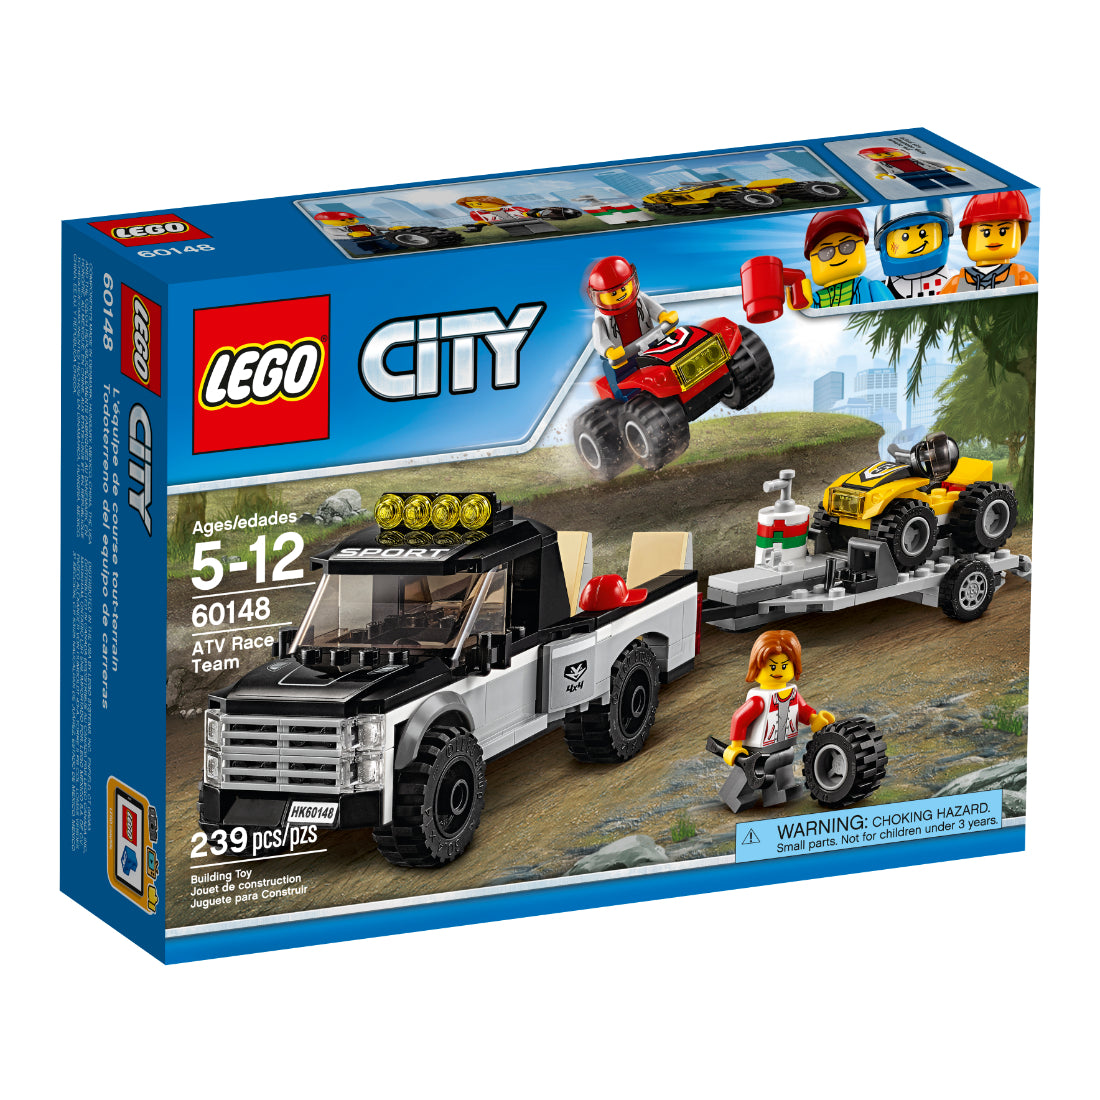 LEGO City Todoterreno Del Equipo De Carreras (60148)